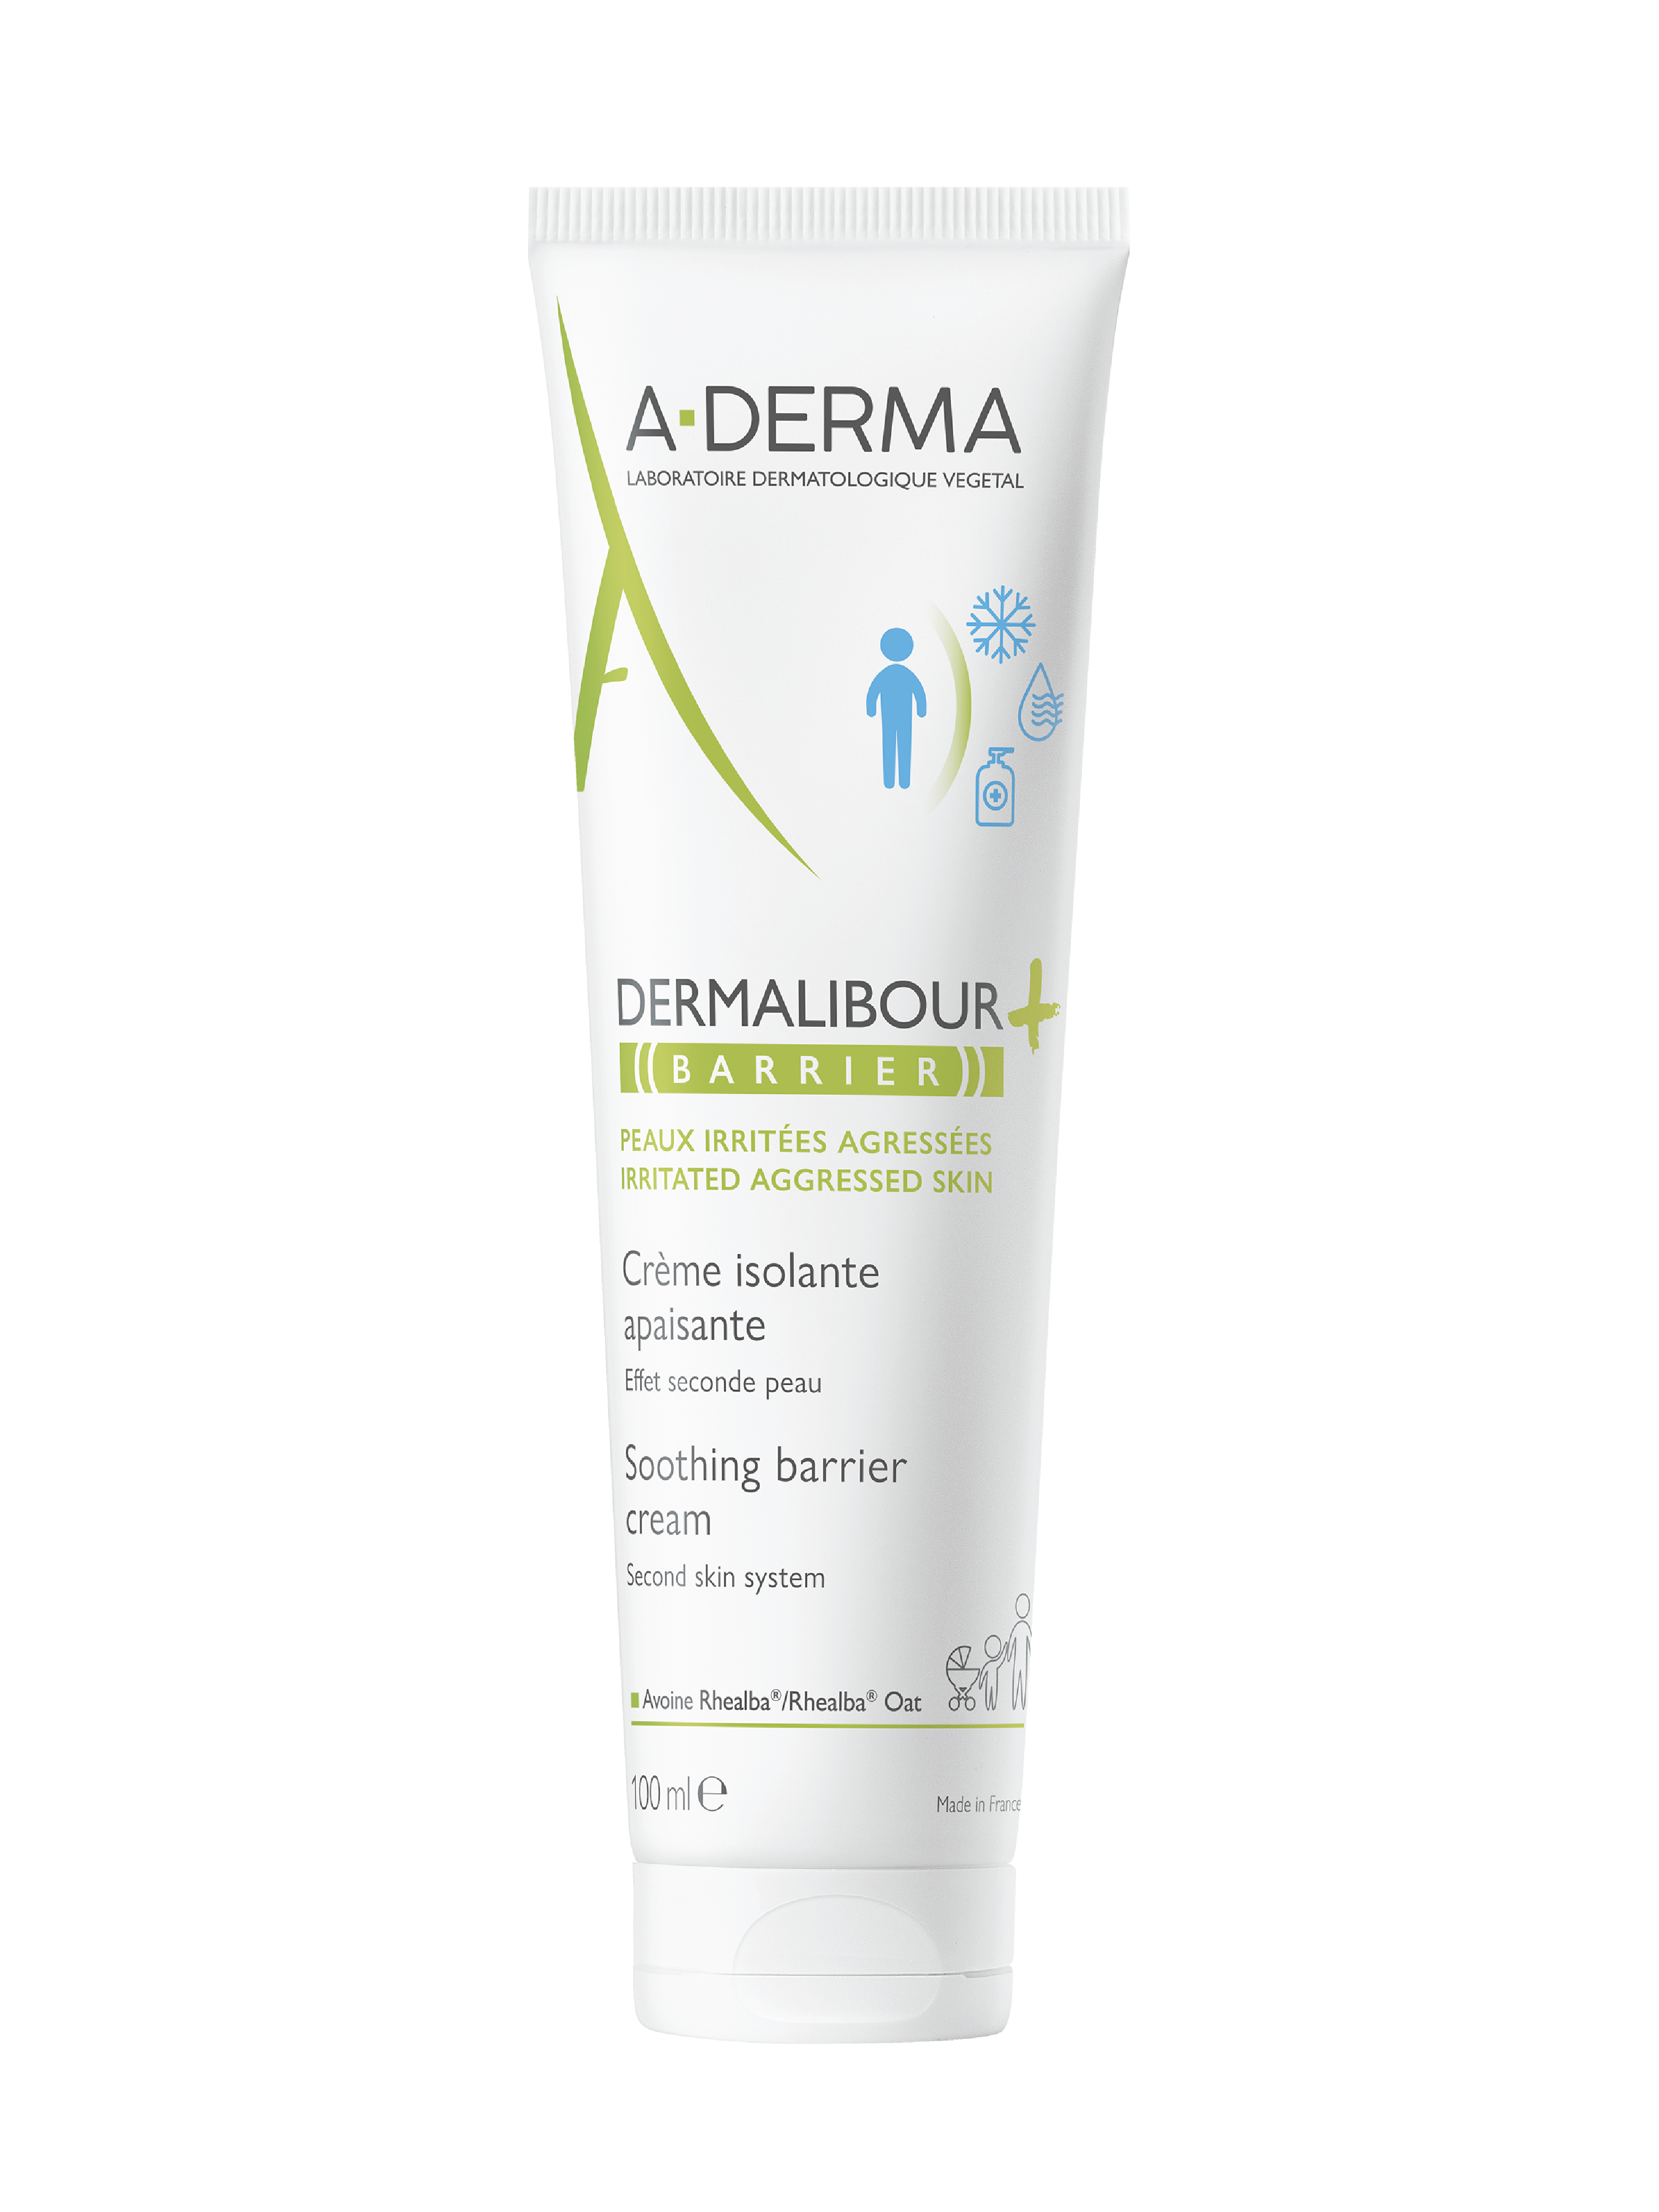 A-Derma Dermalibour + Barrier Cream, 100 ml